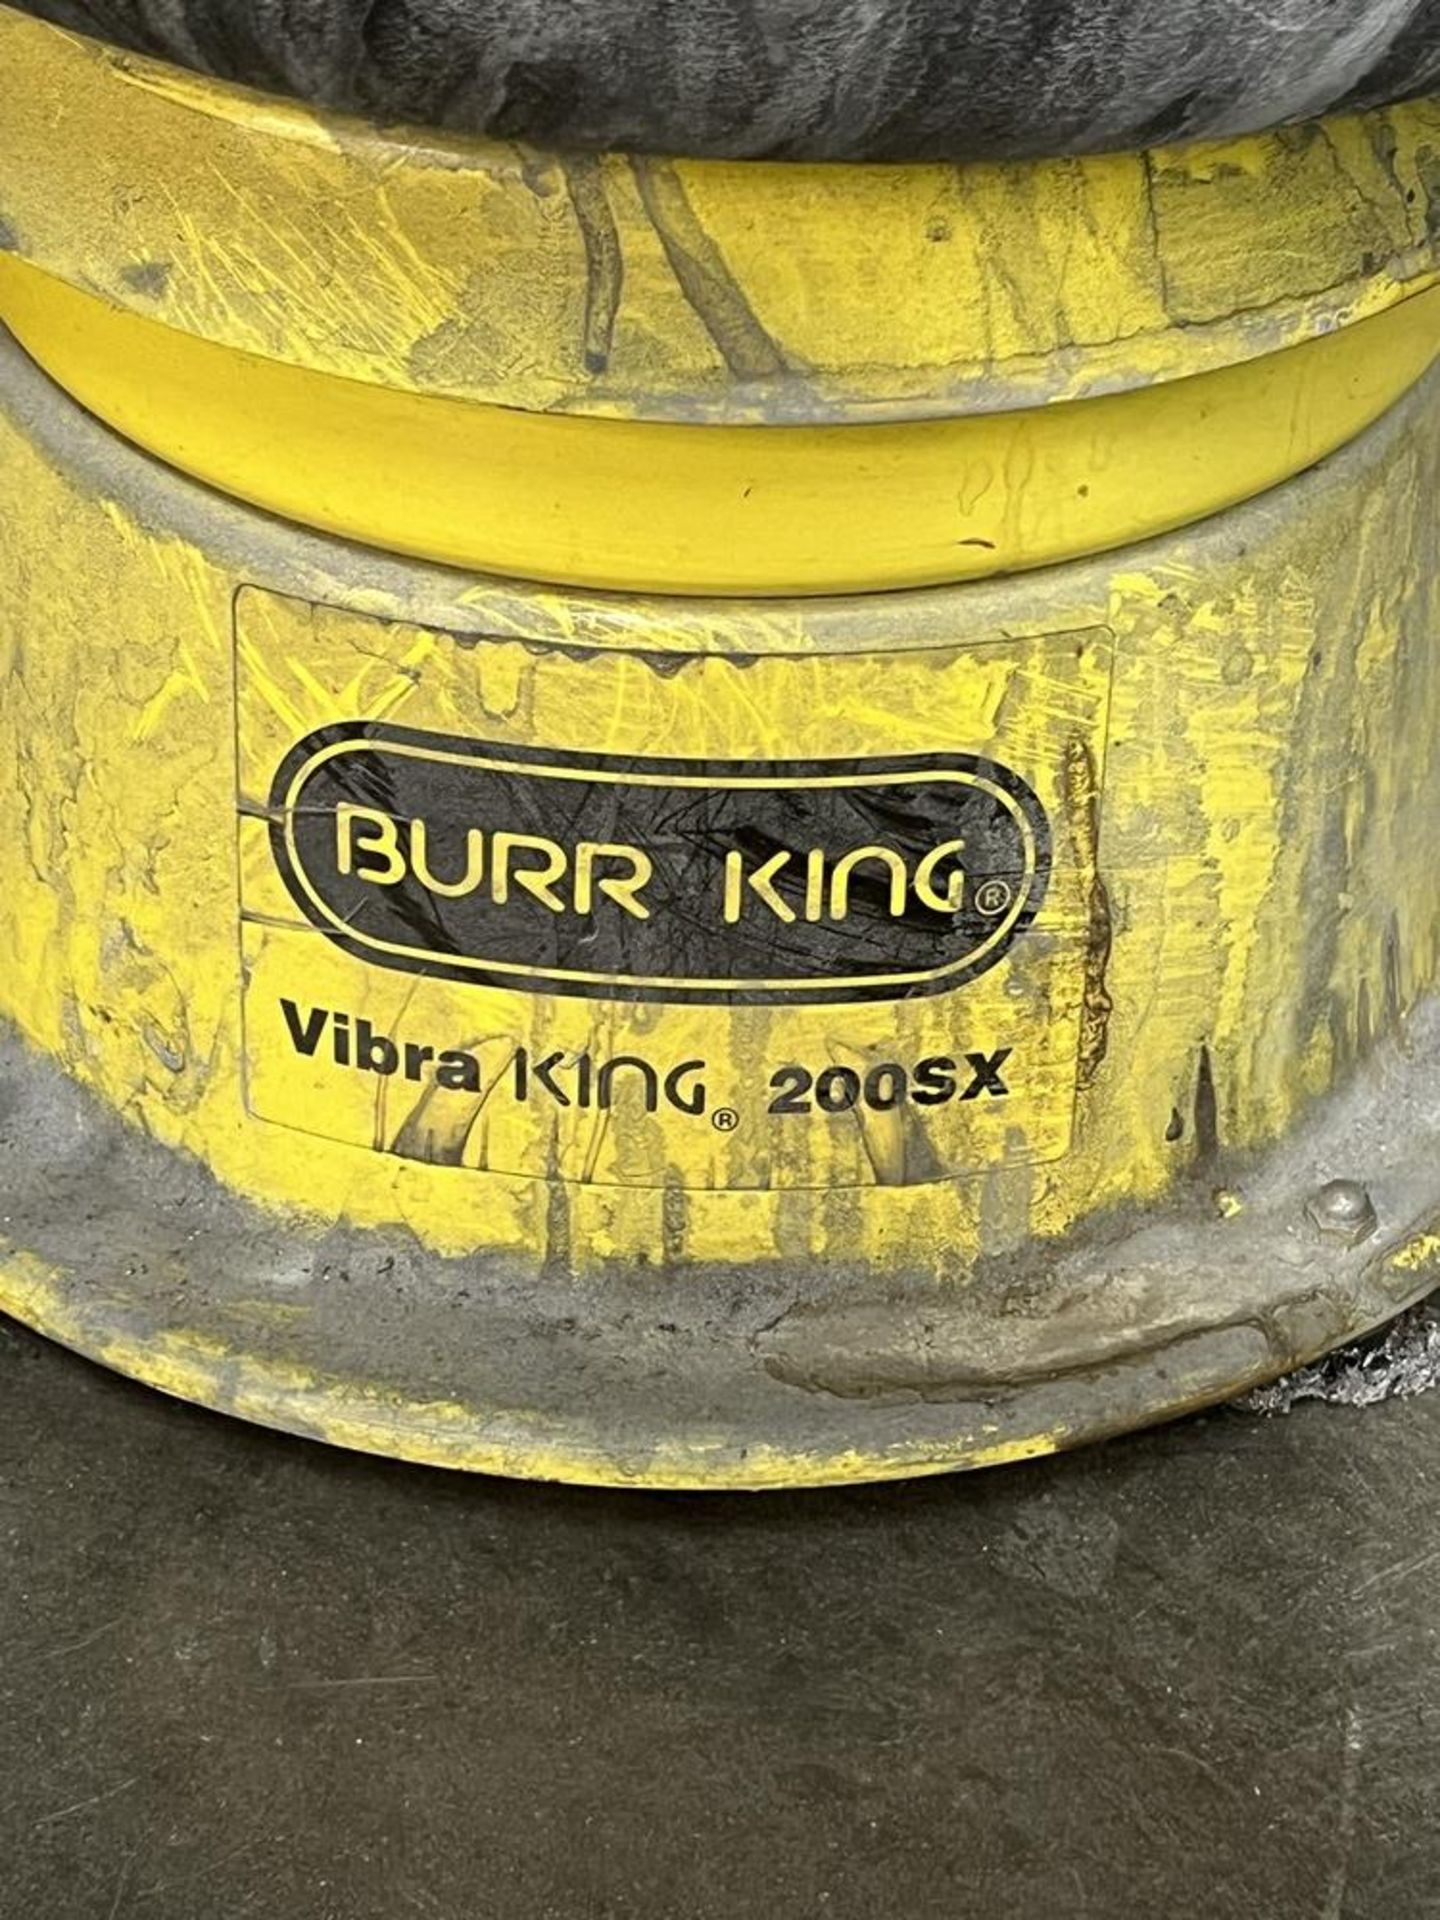 Burr King Vibra King 200 SX - Image 2 of 6